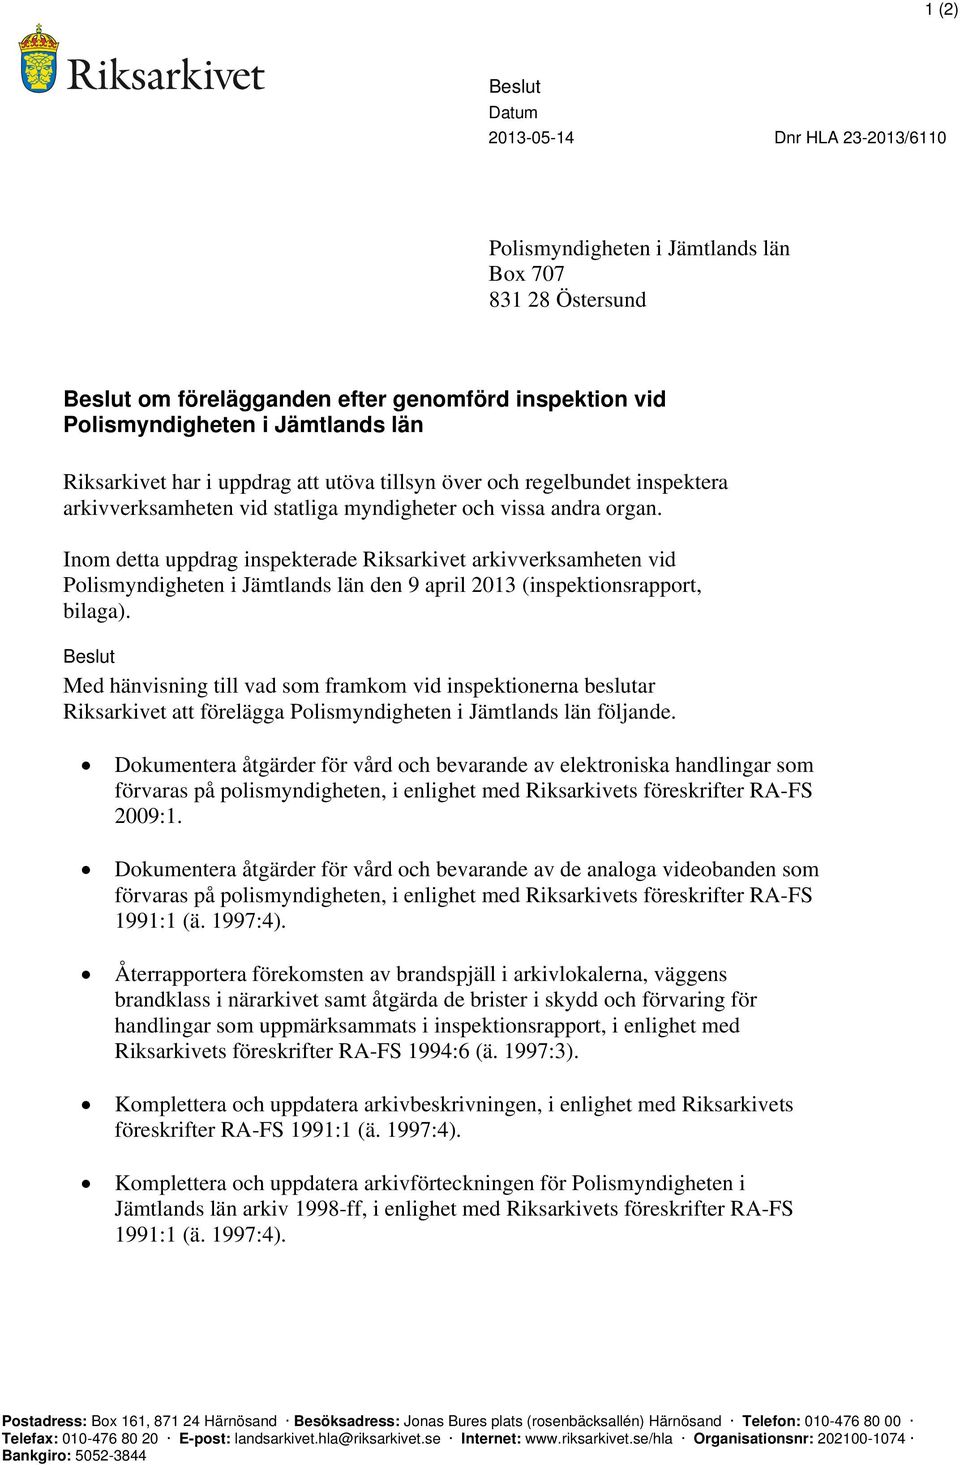 Inom detta uppdrag inspekterade Riksarkivet arkivverksamheten vid Polismyndigheten i Jämtlands län den 9 april 2013 (inspektionsrapport, bilaga).